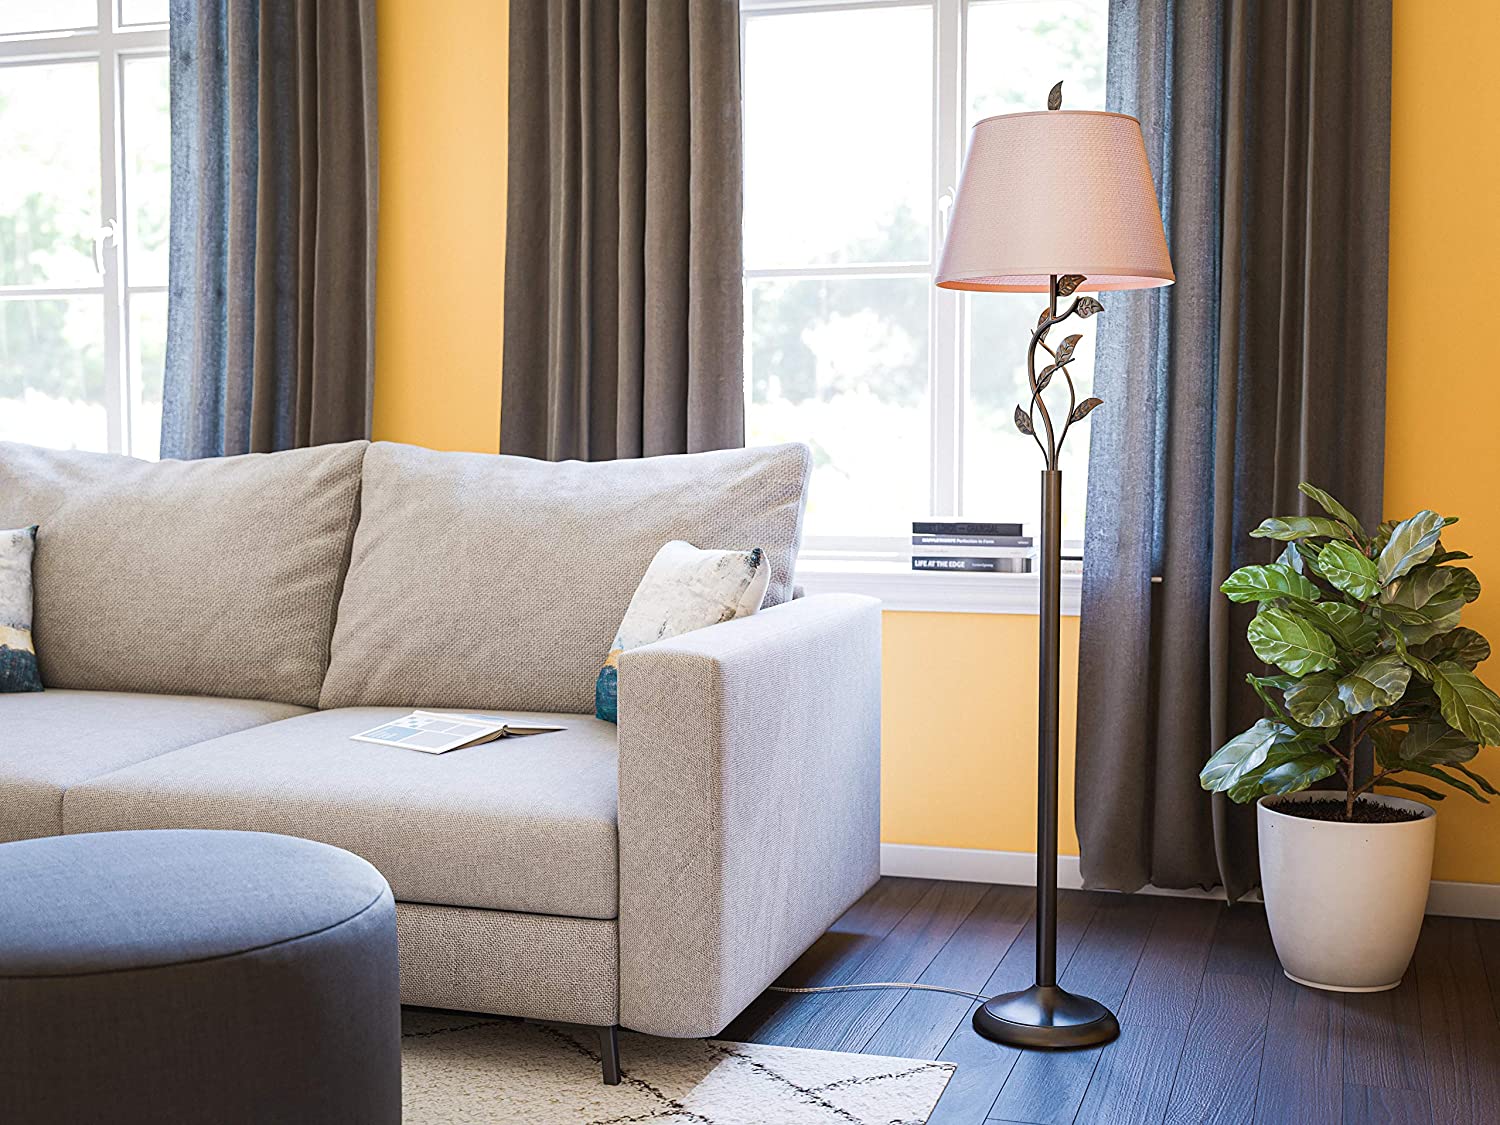 Kenroy Home Rustic Floor Lamp. 10 Unique Floor Lamps to Brighten Your Living Room - 20